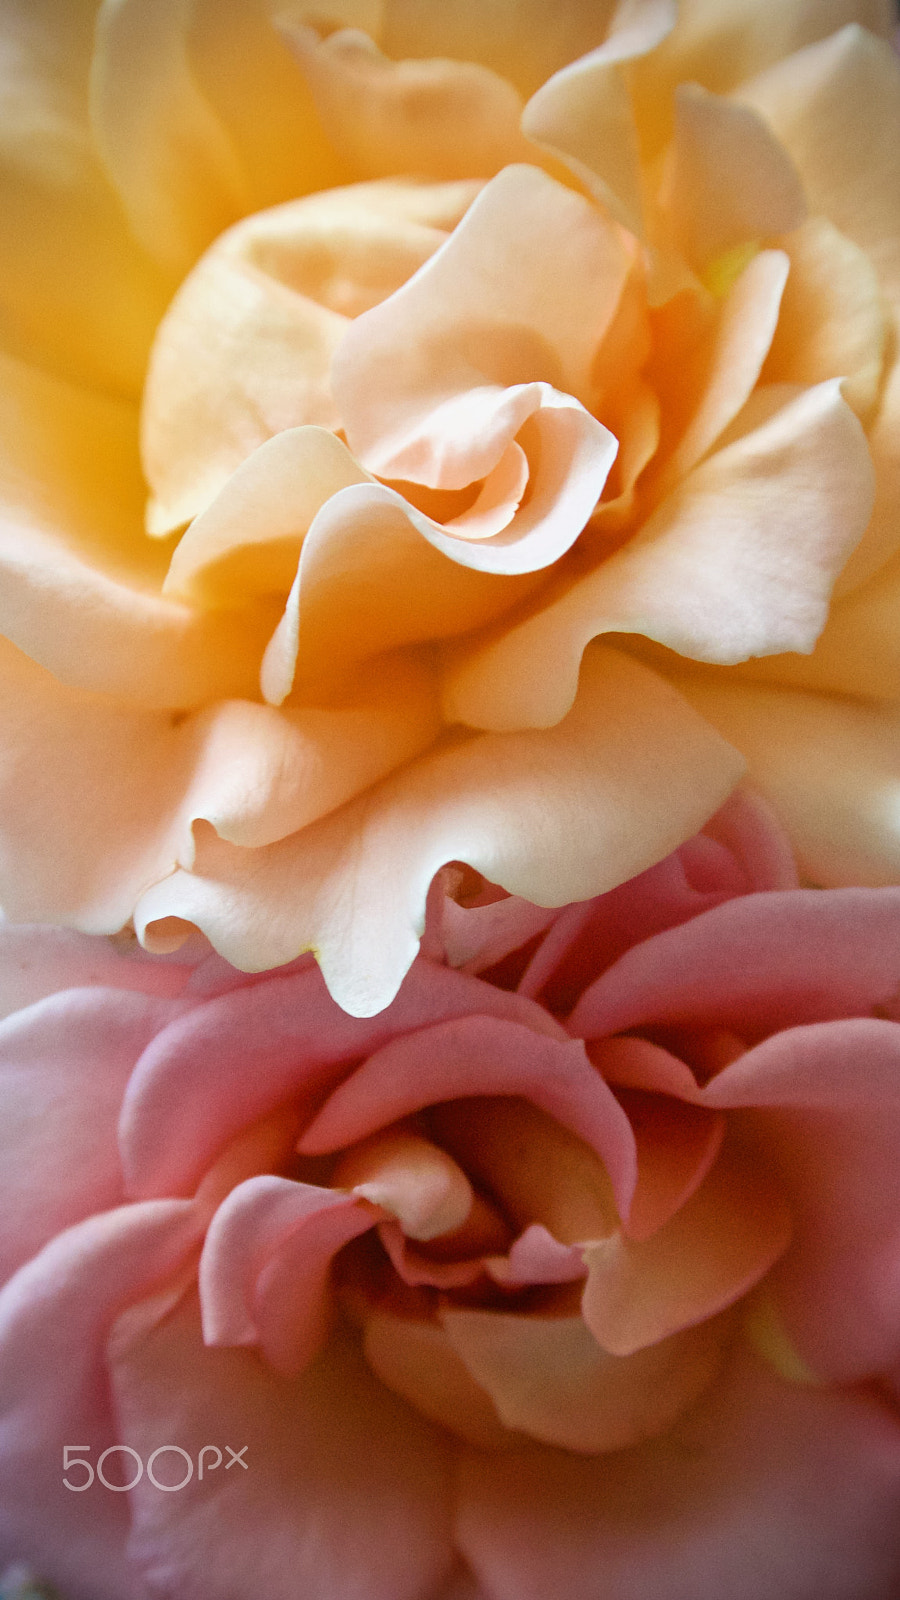 Nikon 1 J2 sample photo. Rose petals photography